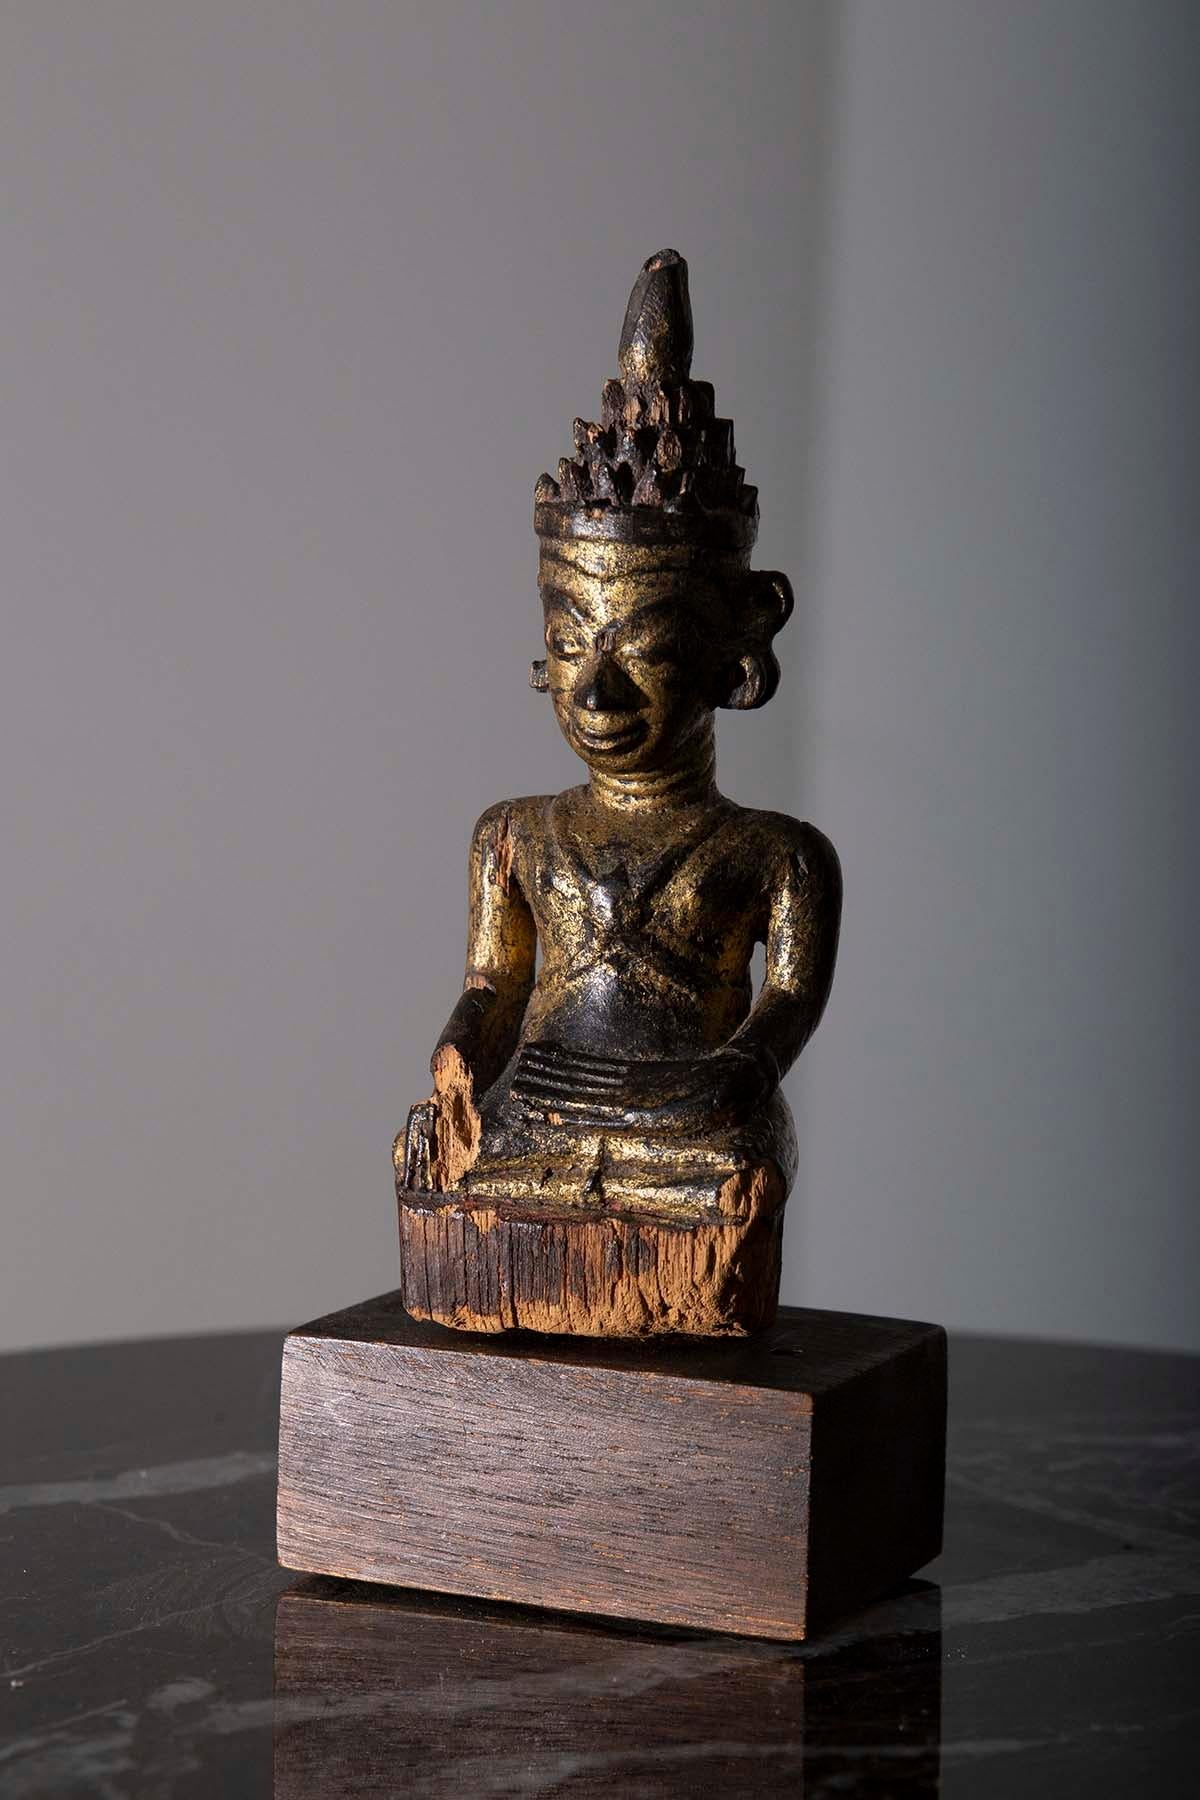 
In der Mitte des 18. Jahrhunderts wurde im bezaubernden Land Birma während der Shan-Periode ein großartiges Meisterwerk spiritueller Kunstfertigkeit geboren - ein außergewöhnlicher sitzender birmanischer Buddha mit Holzkrone, der oft als